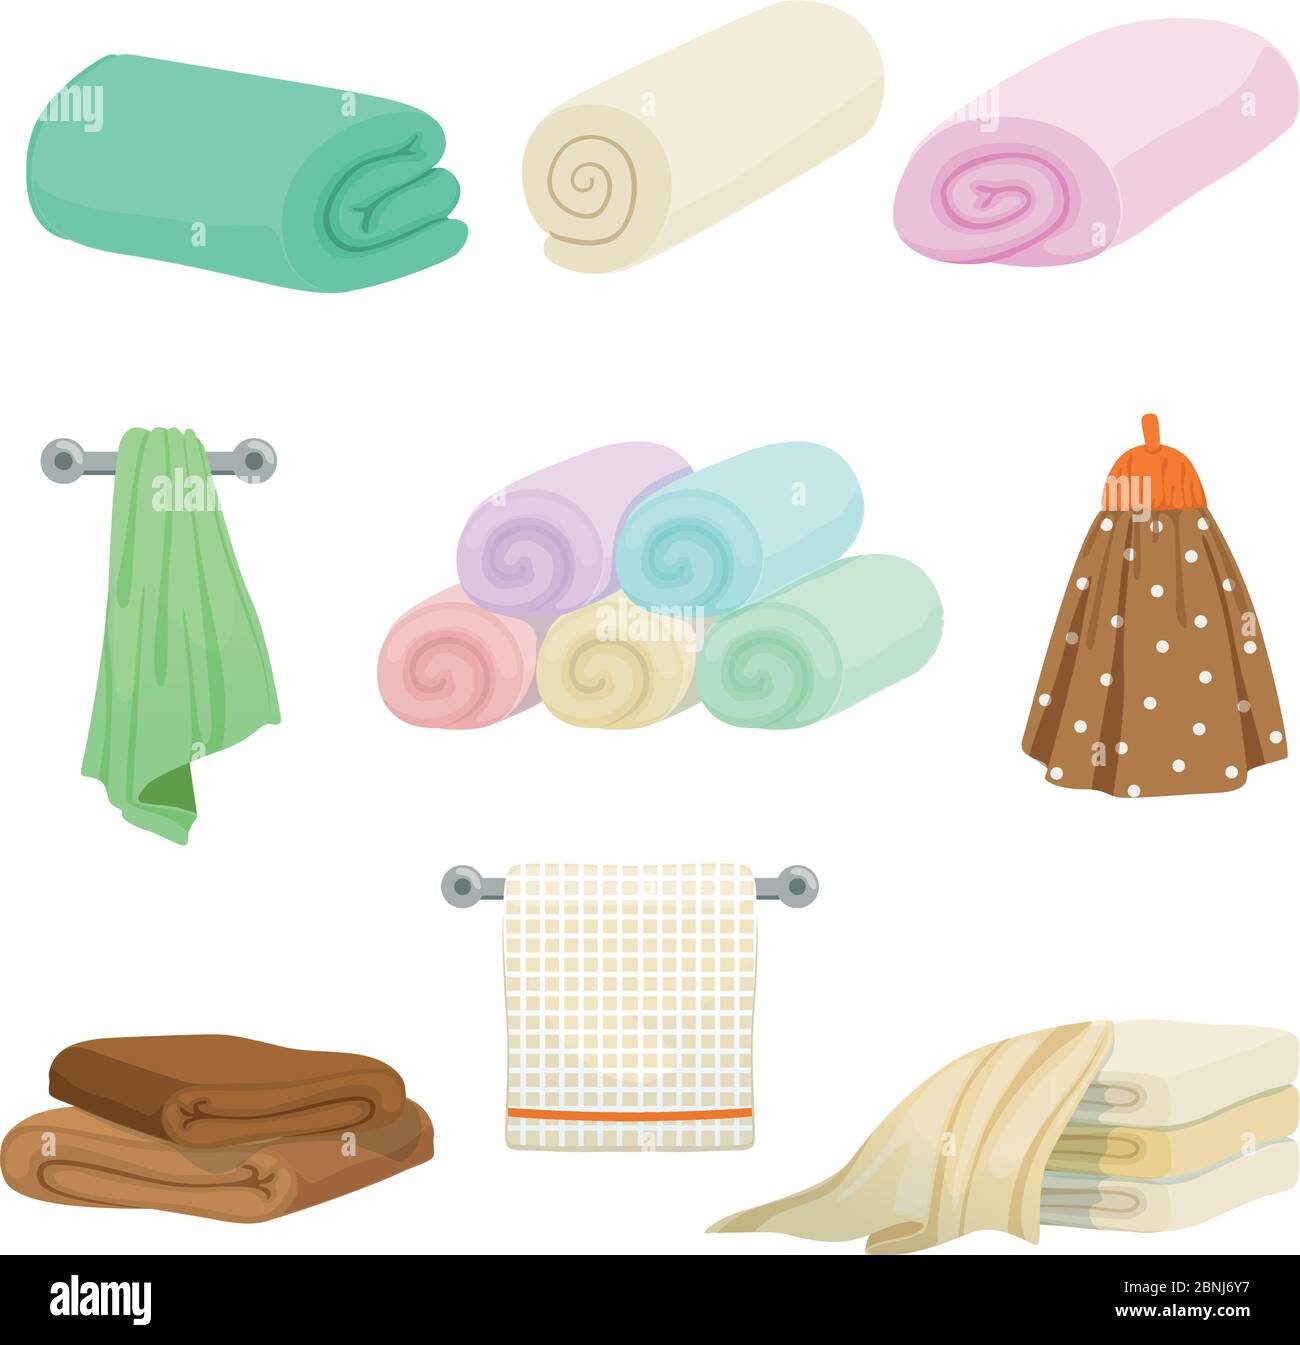 Handtücher in verschiedenen Farben für Küche und Bad. Vektor-Bilder im Cartoon-Stil Stock Vektor